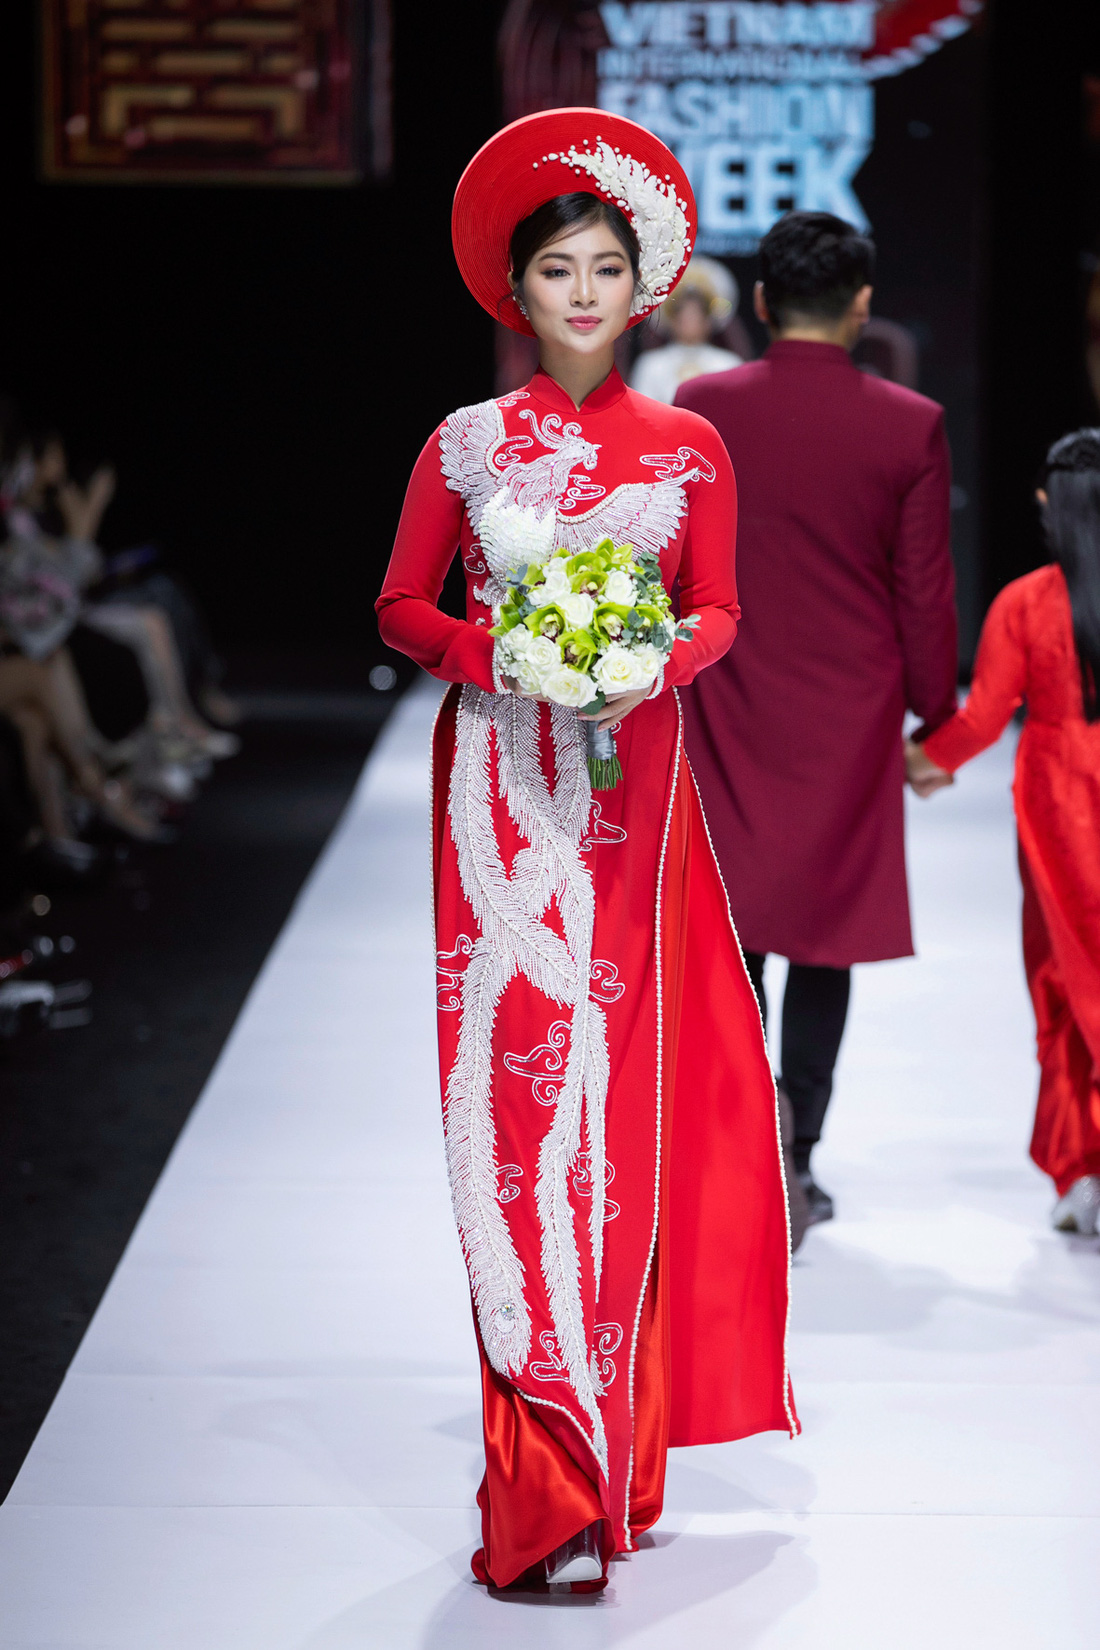 Hoa hậu Khánh Vân làm vedette, NSND Hồng Vân làm người mẫu catwalk cho nhà thiết kế Minh Châu - Ảnh 9.